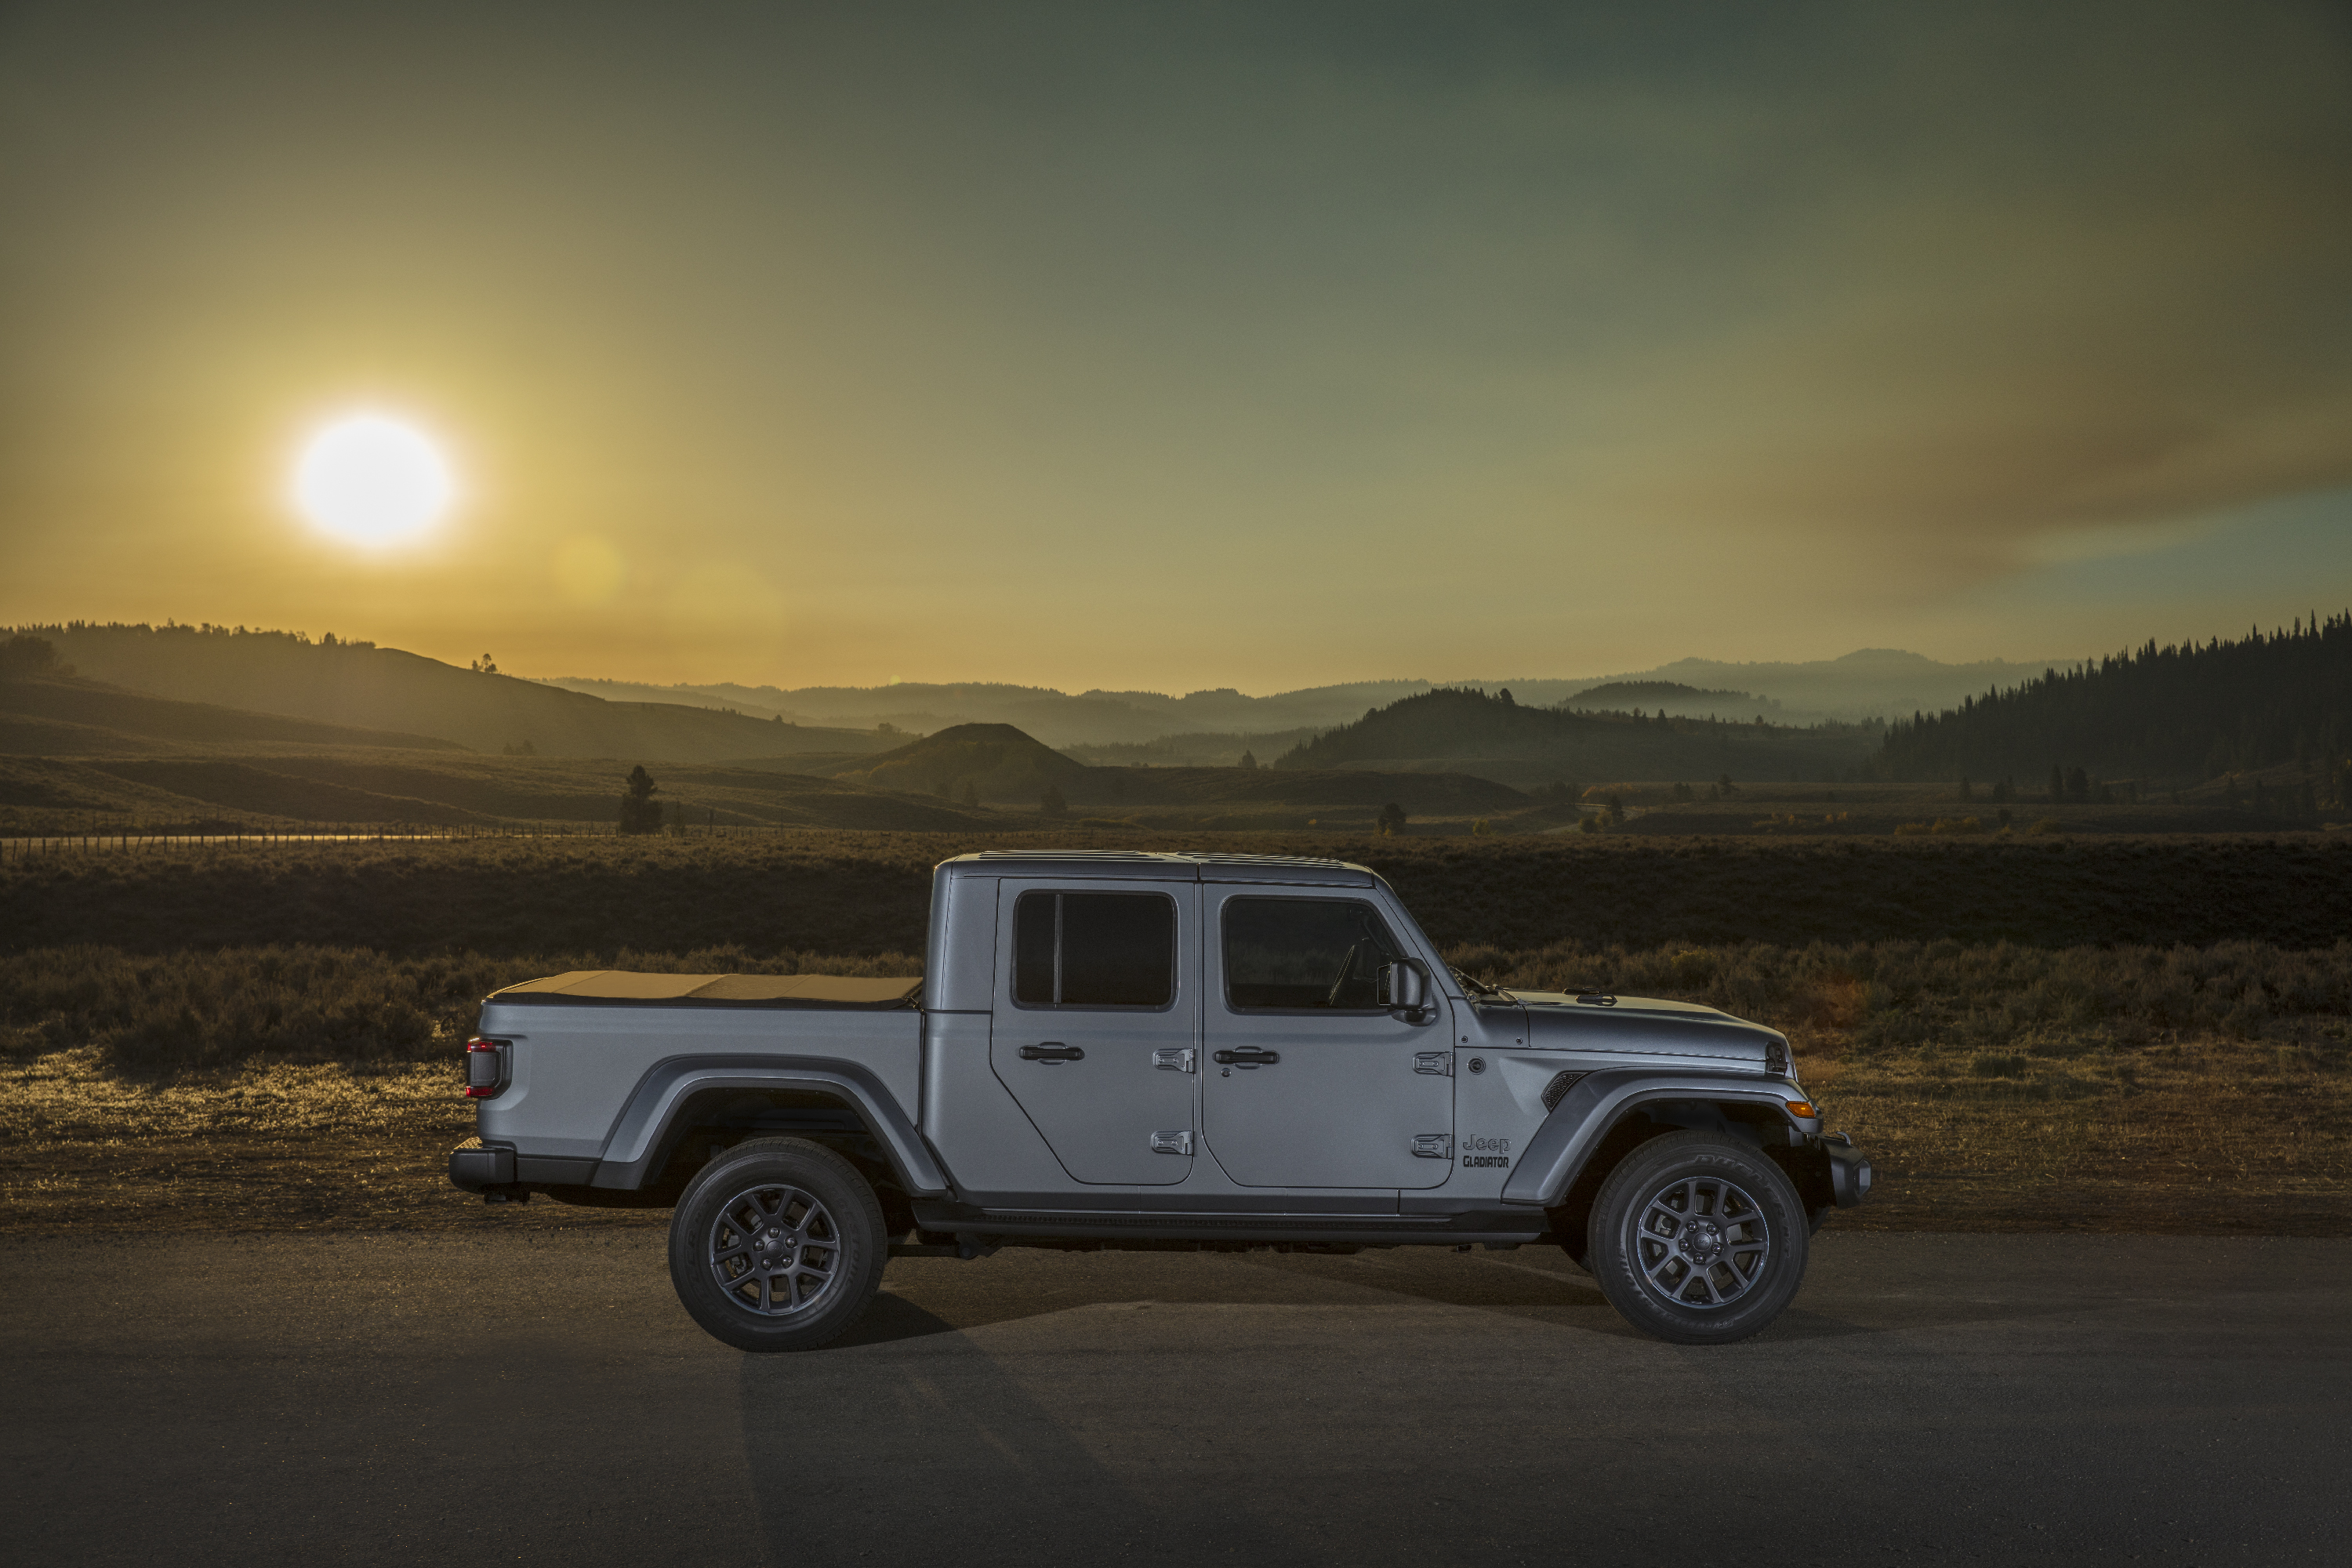 2020 Jeep® Gladiator Overland. (Jeep).